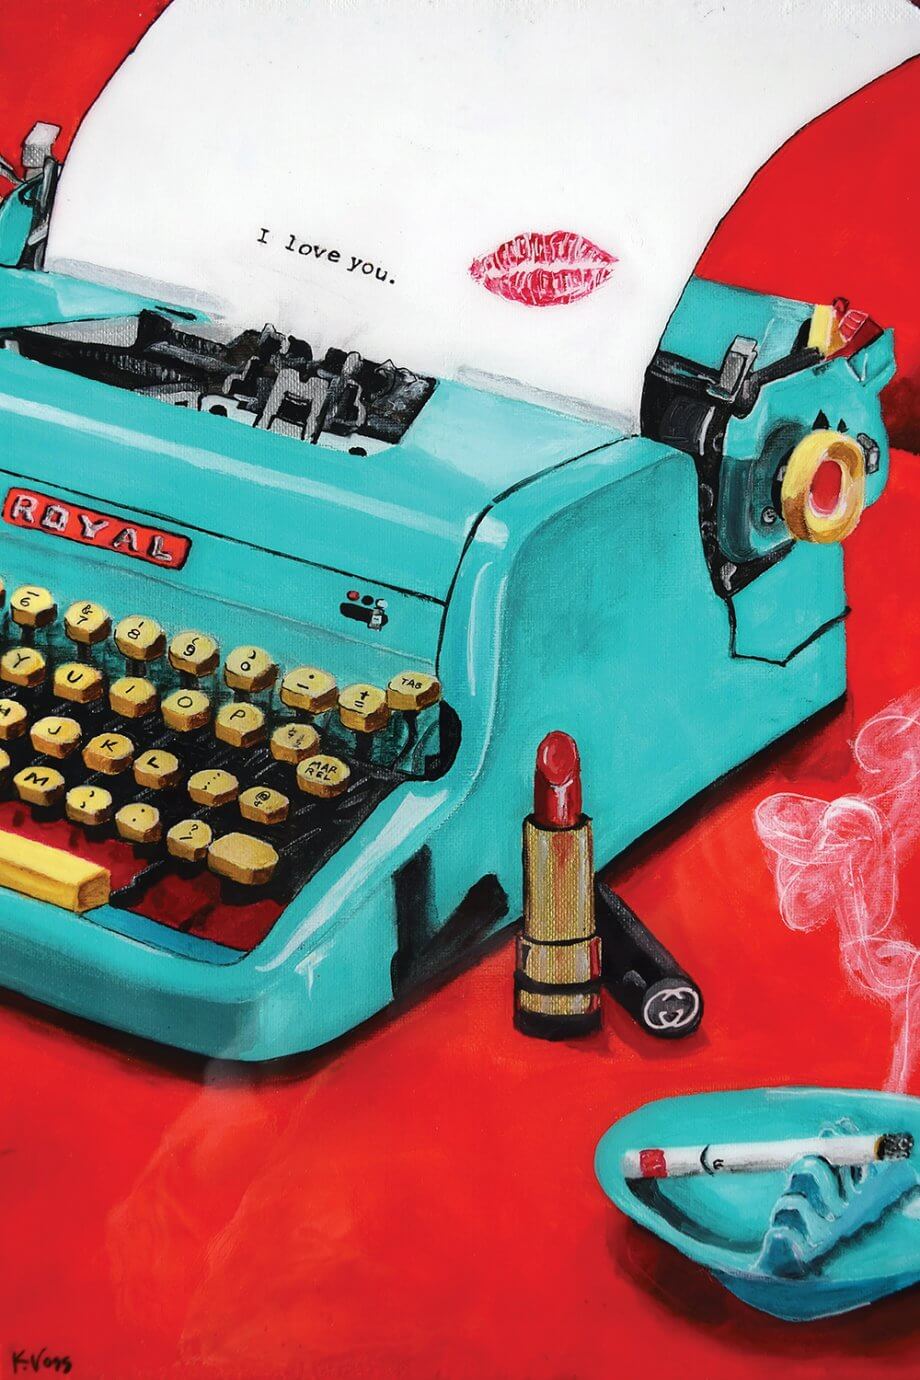 kristin voss painting - teal typewriter